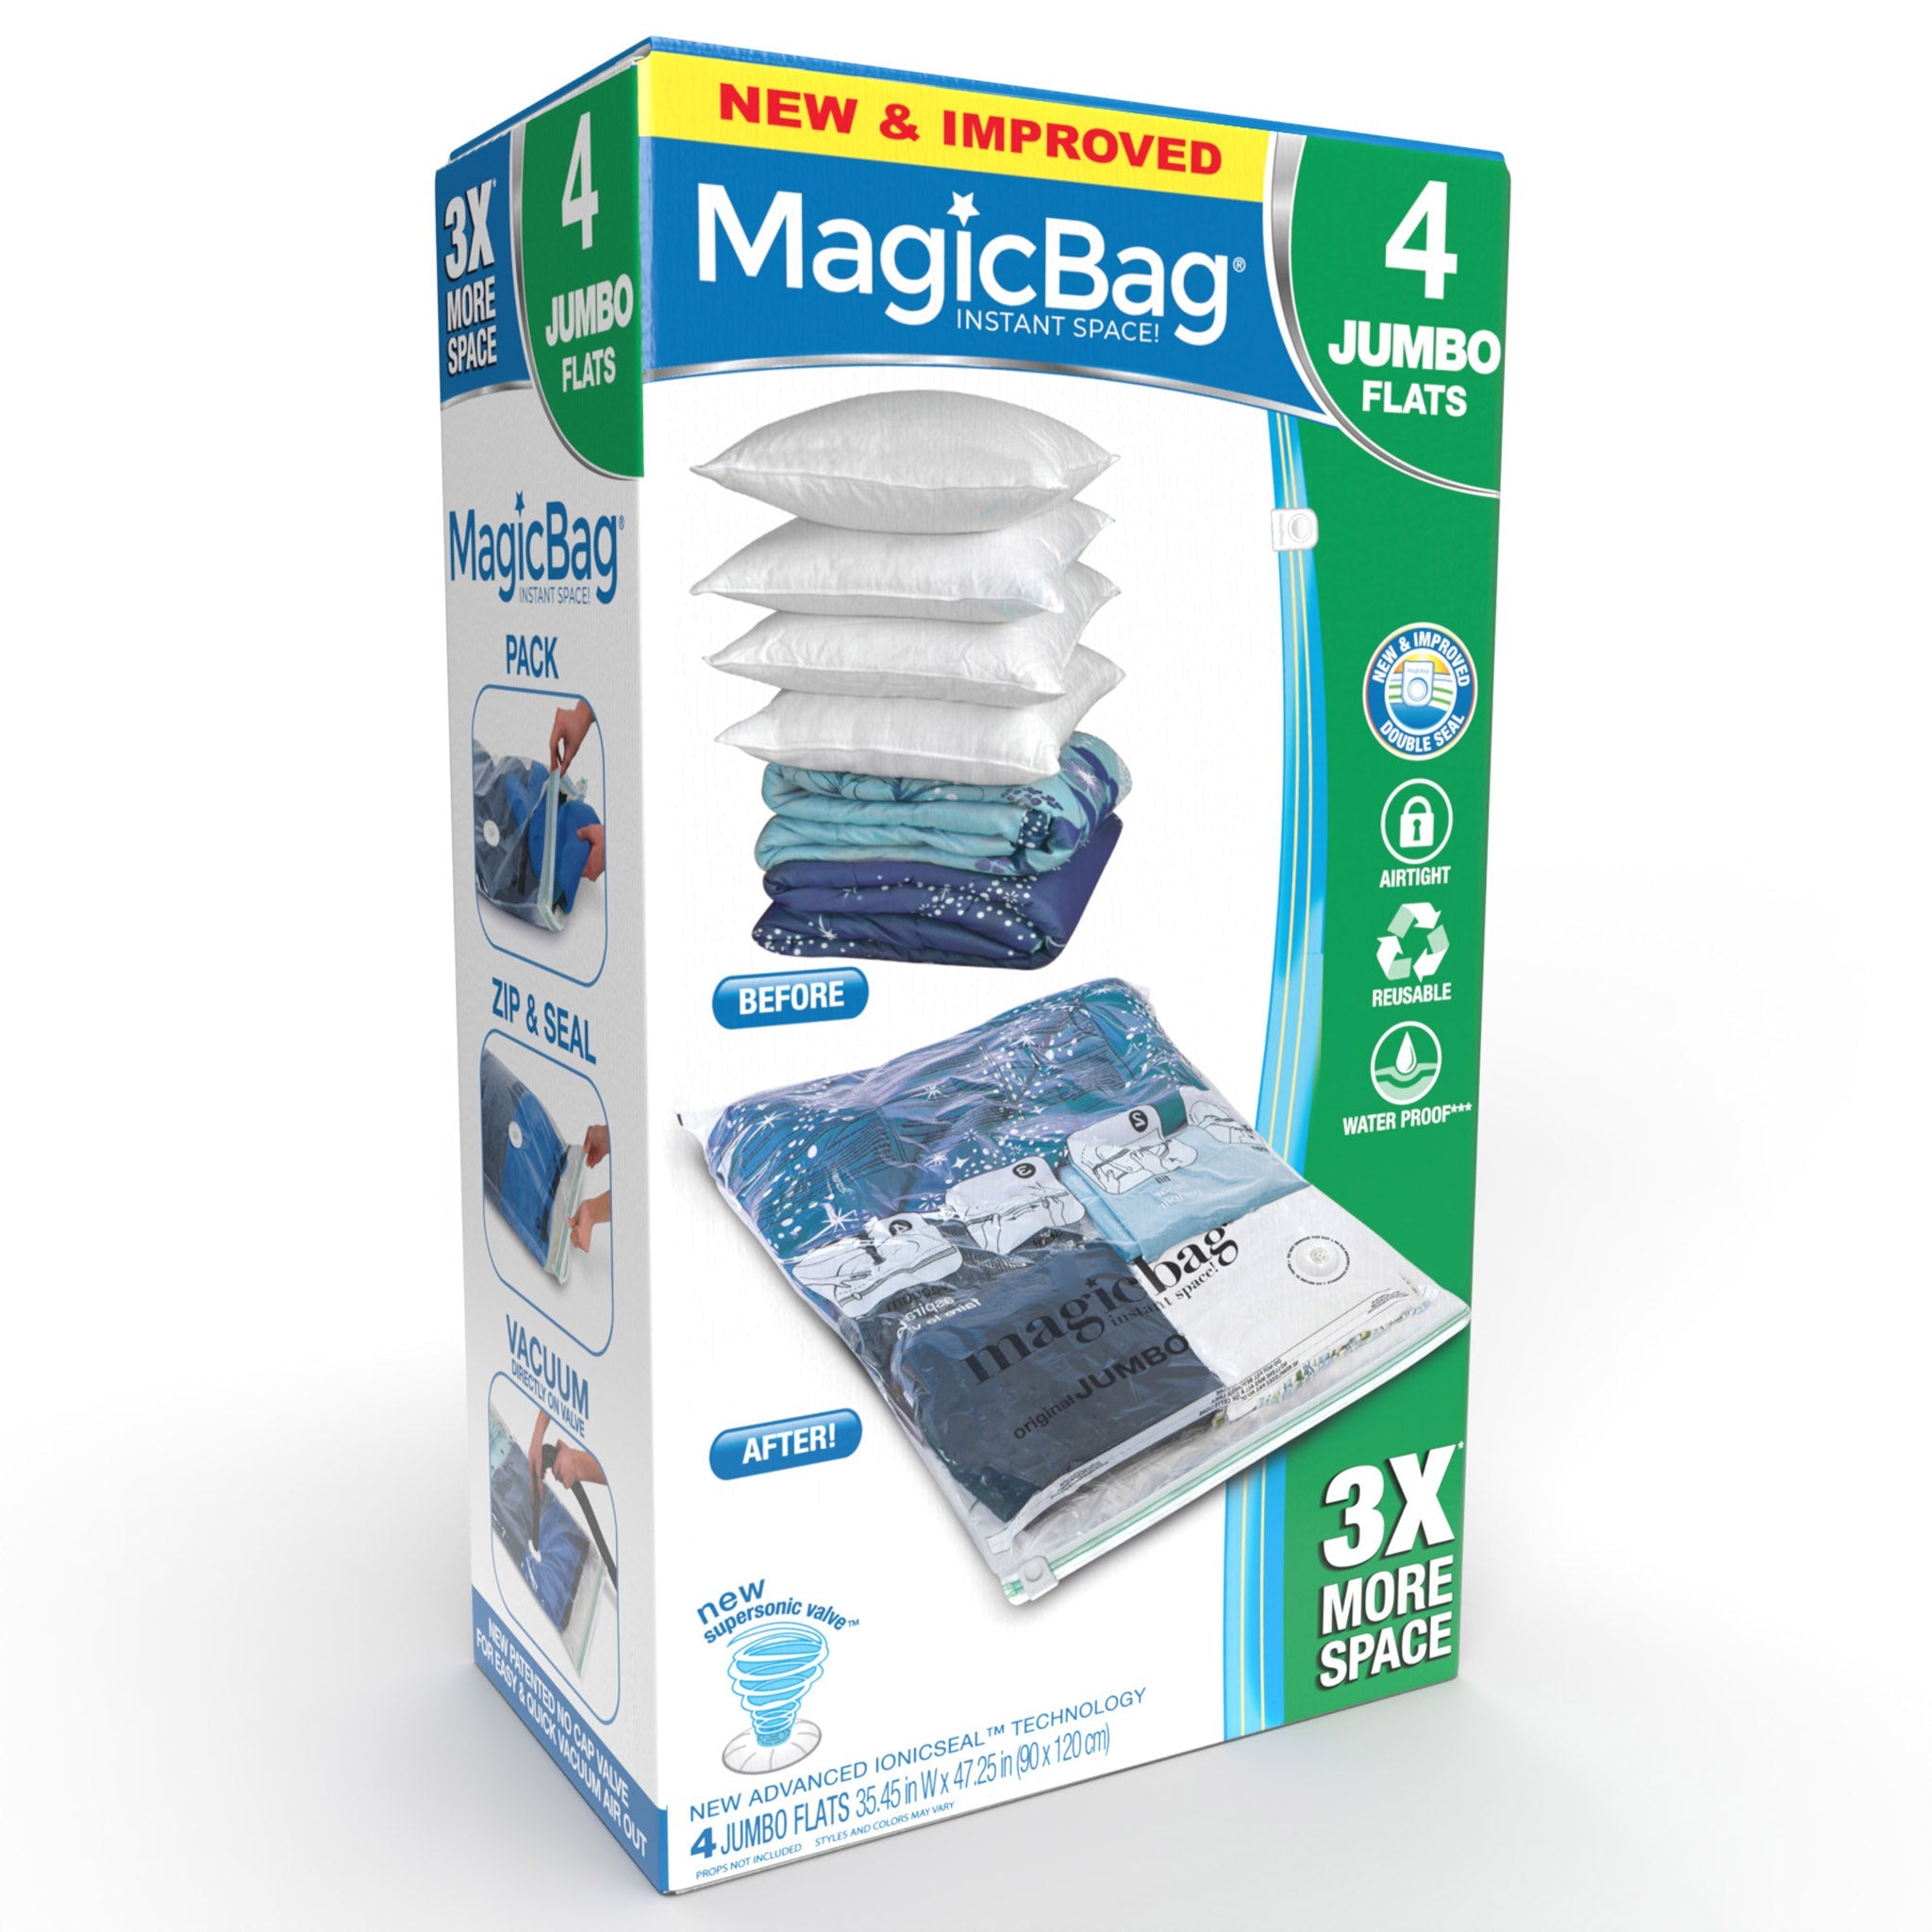 http://www.shopsmartdesign.com/cdn/shop/products/magicbag-instant-space-saver-storage-flat-jumbo-smart-design-magicbag-5717412-200-incrementing-number-269880.jpg?v=1679340548